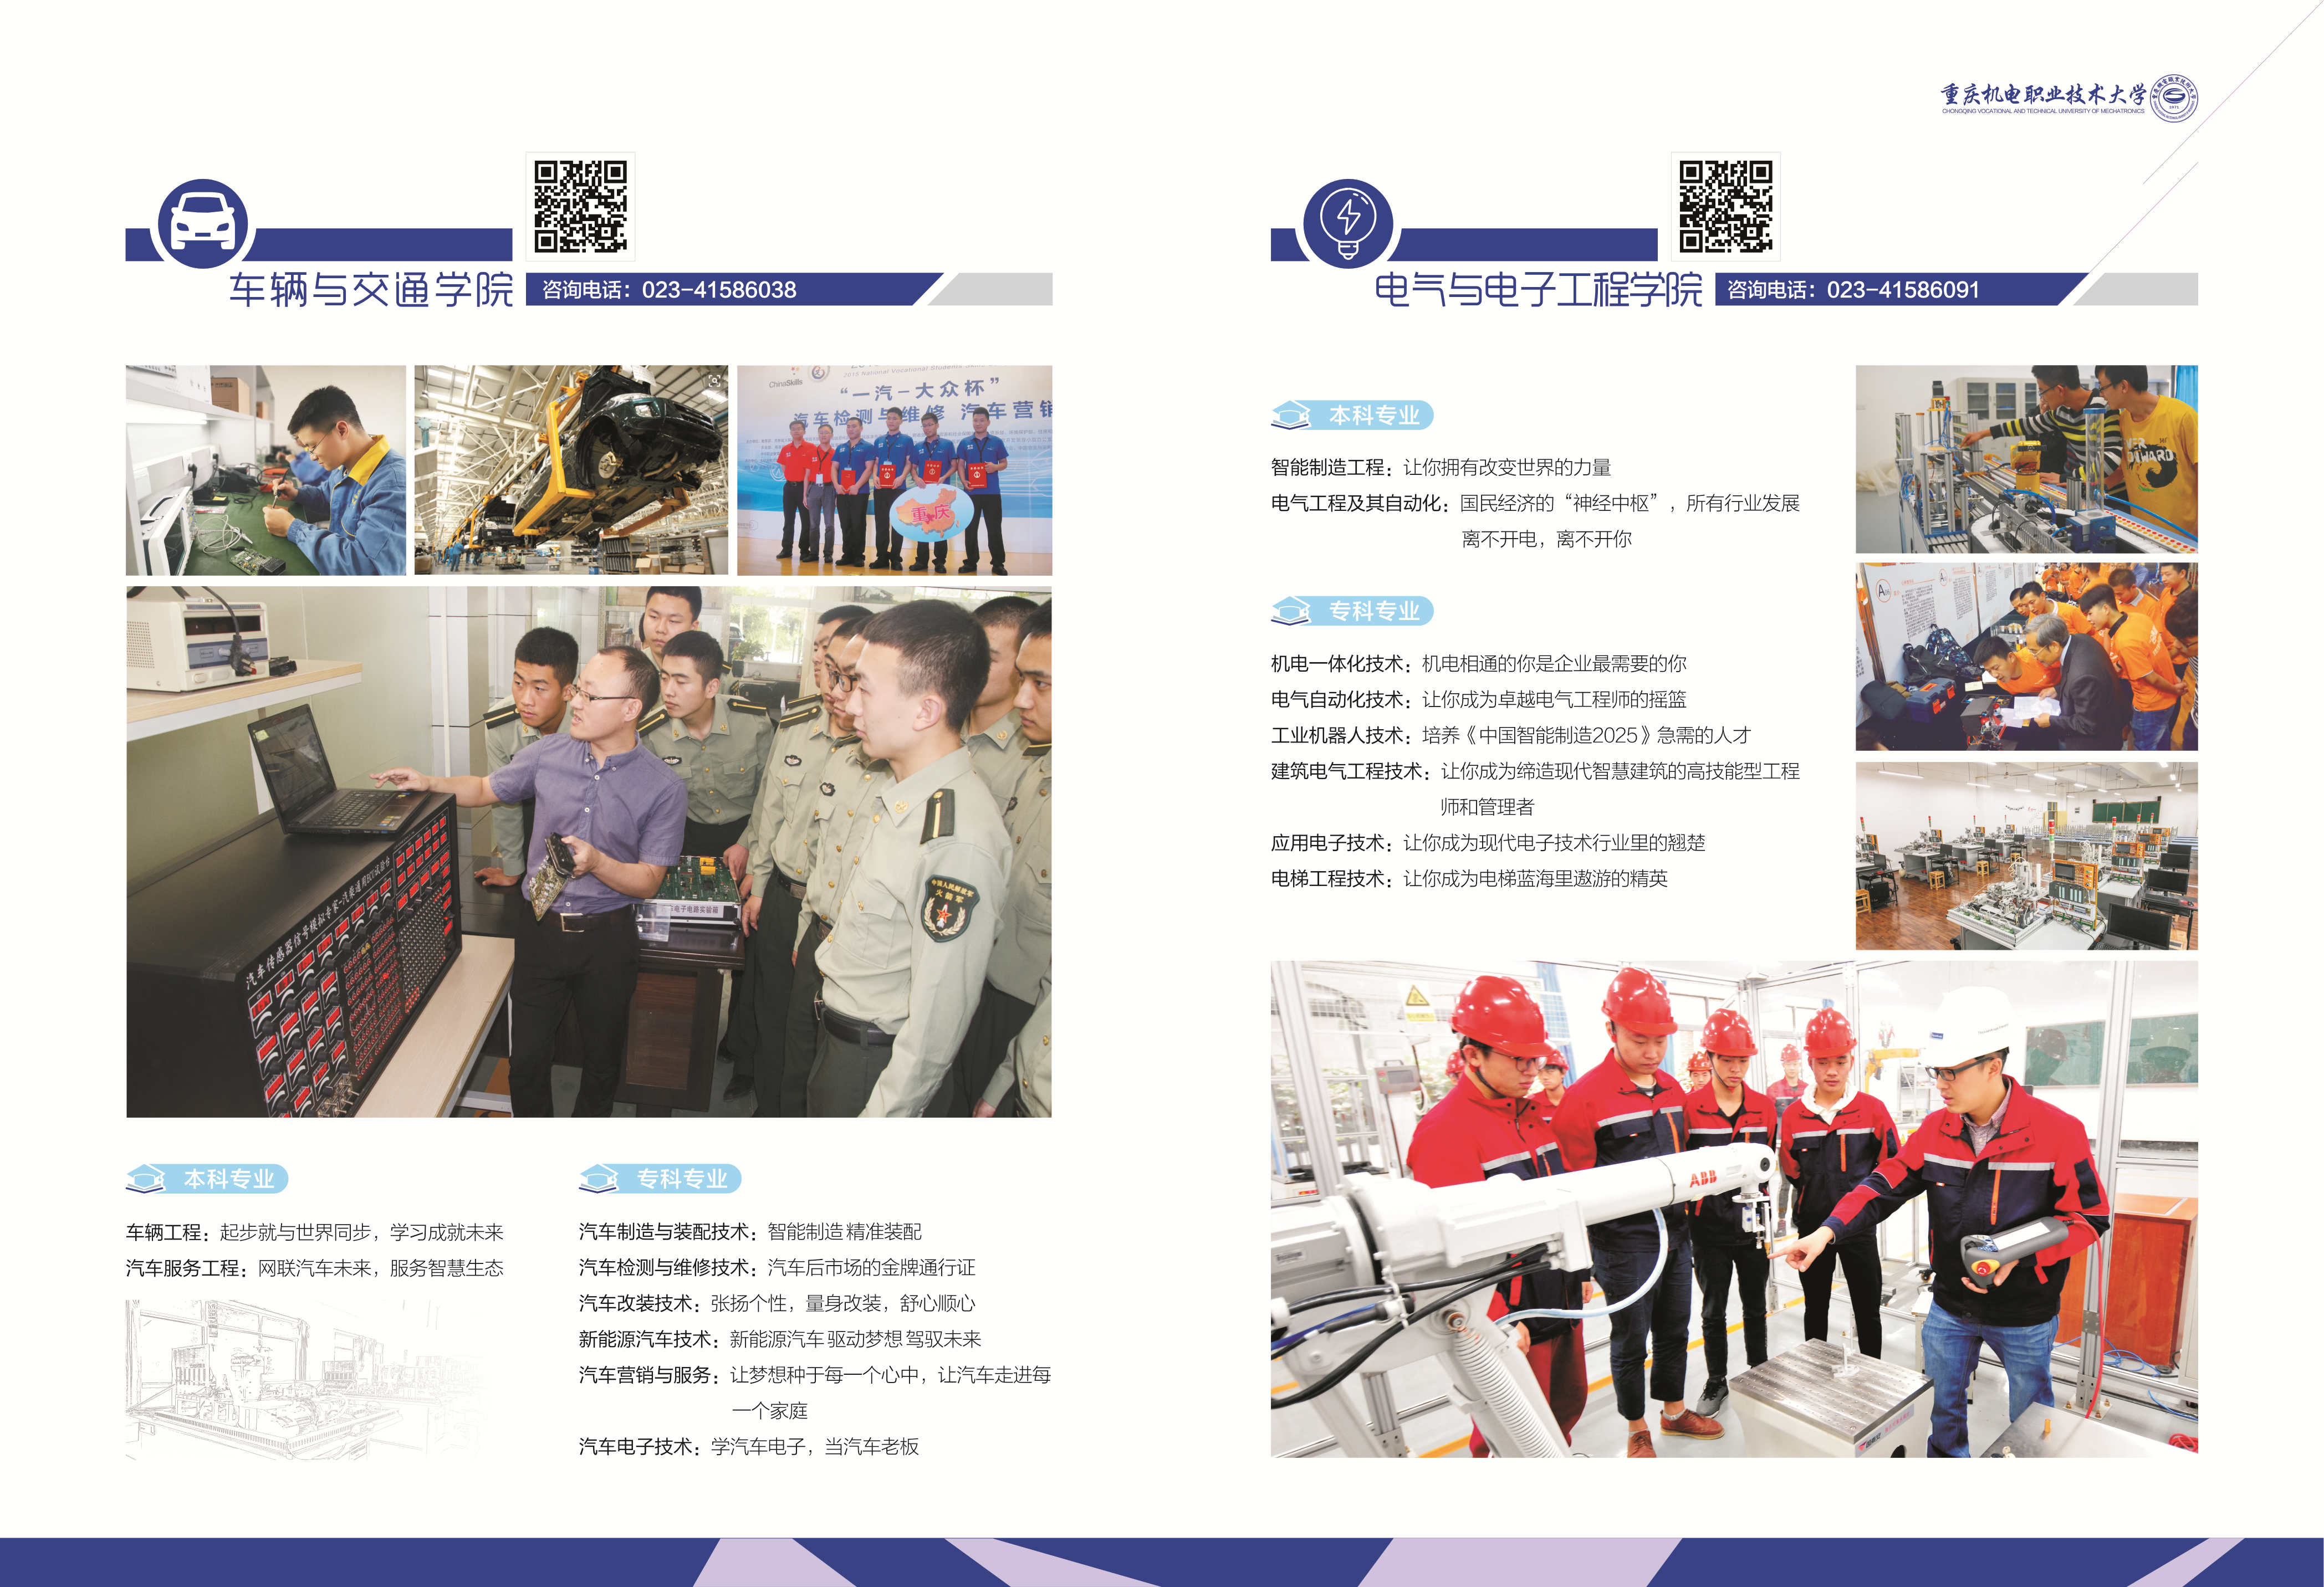 重庆机电职业技术学院2020年招生简章